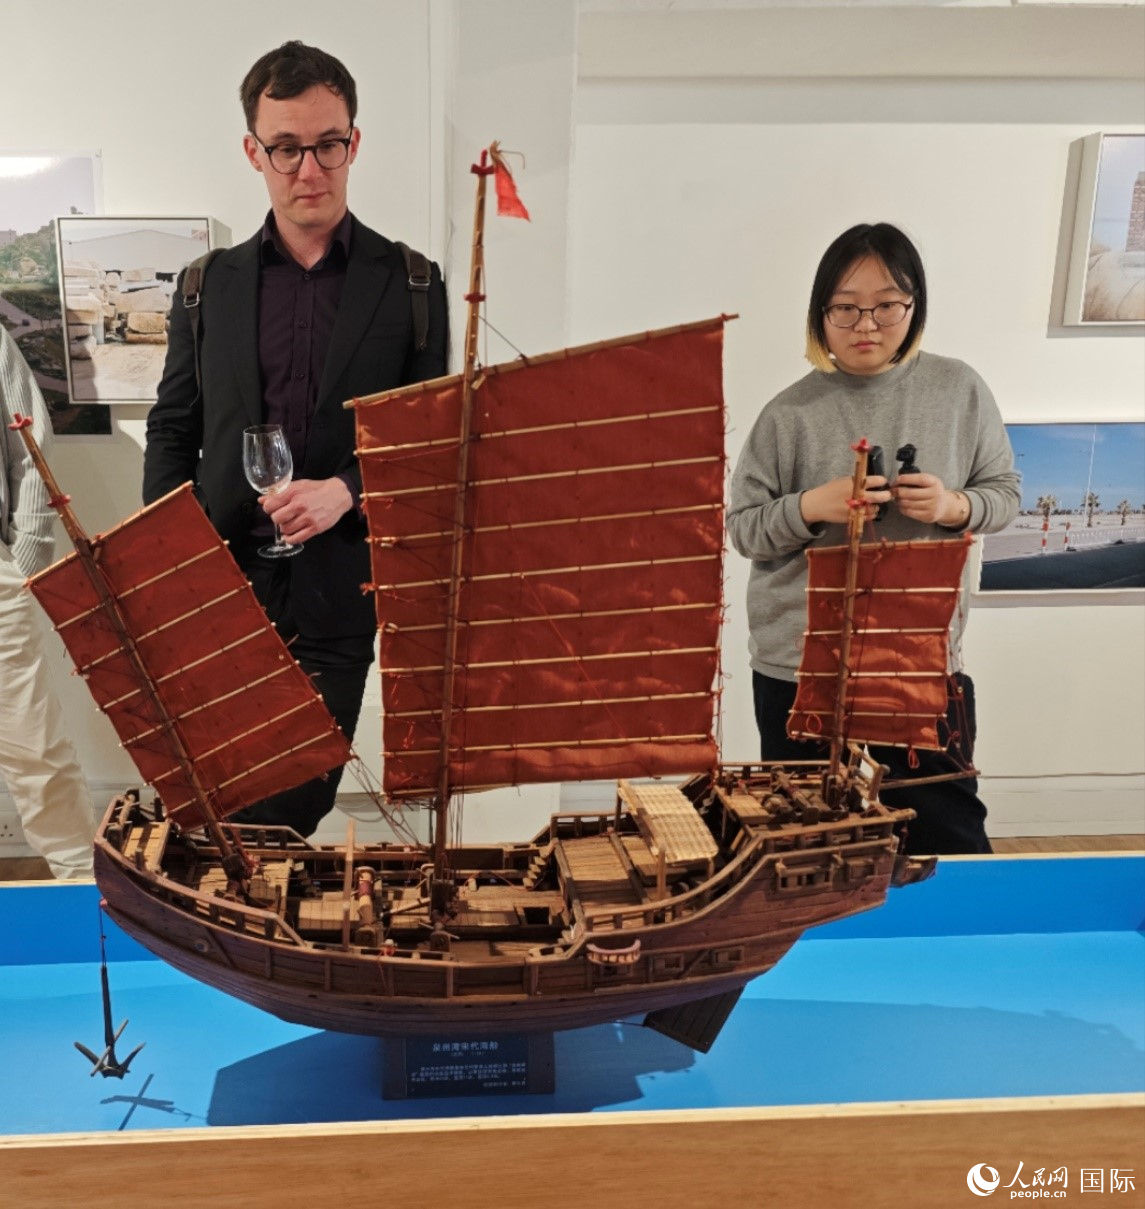 英国观众在欣赏来自泉州湾宋代海船模型。邢雪摄